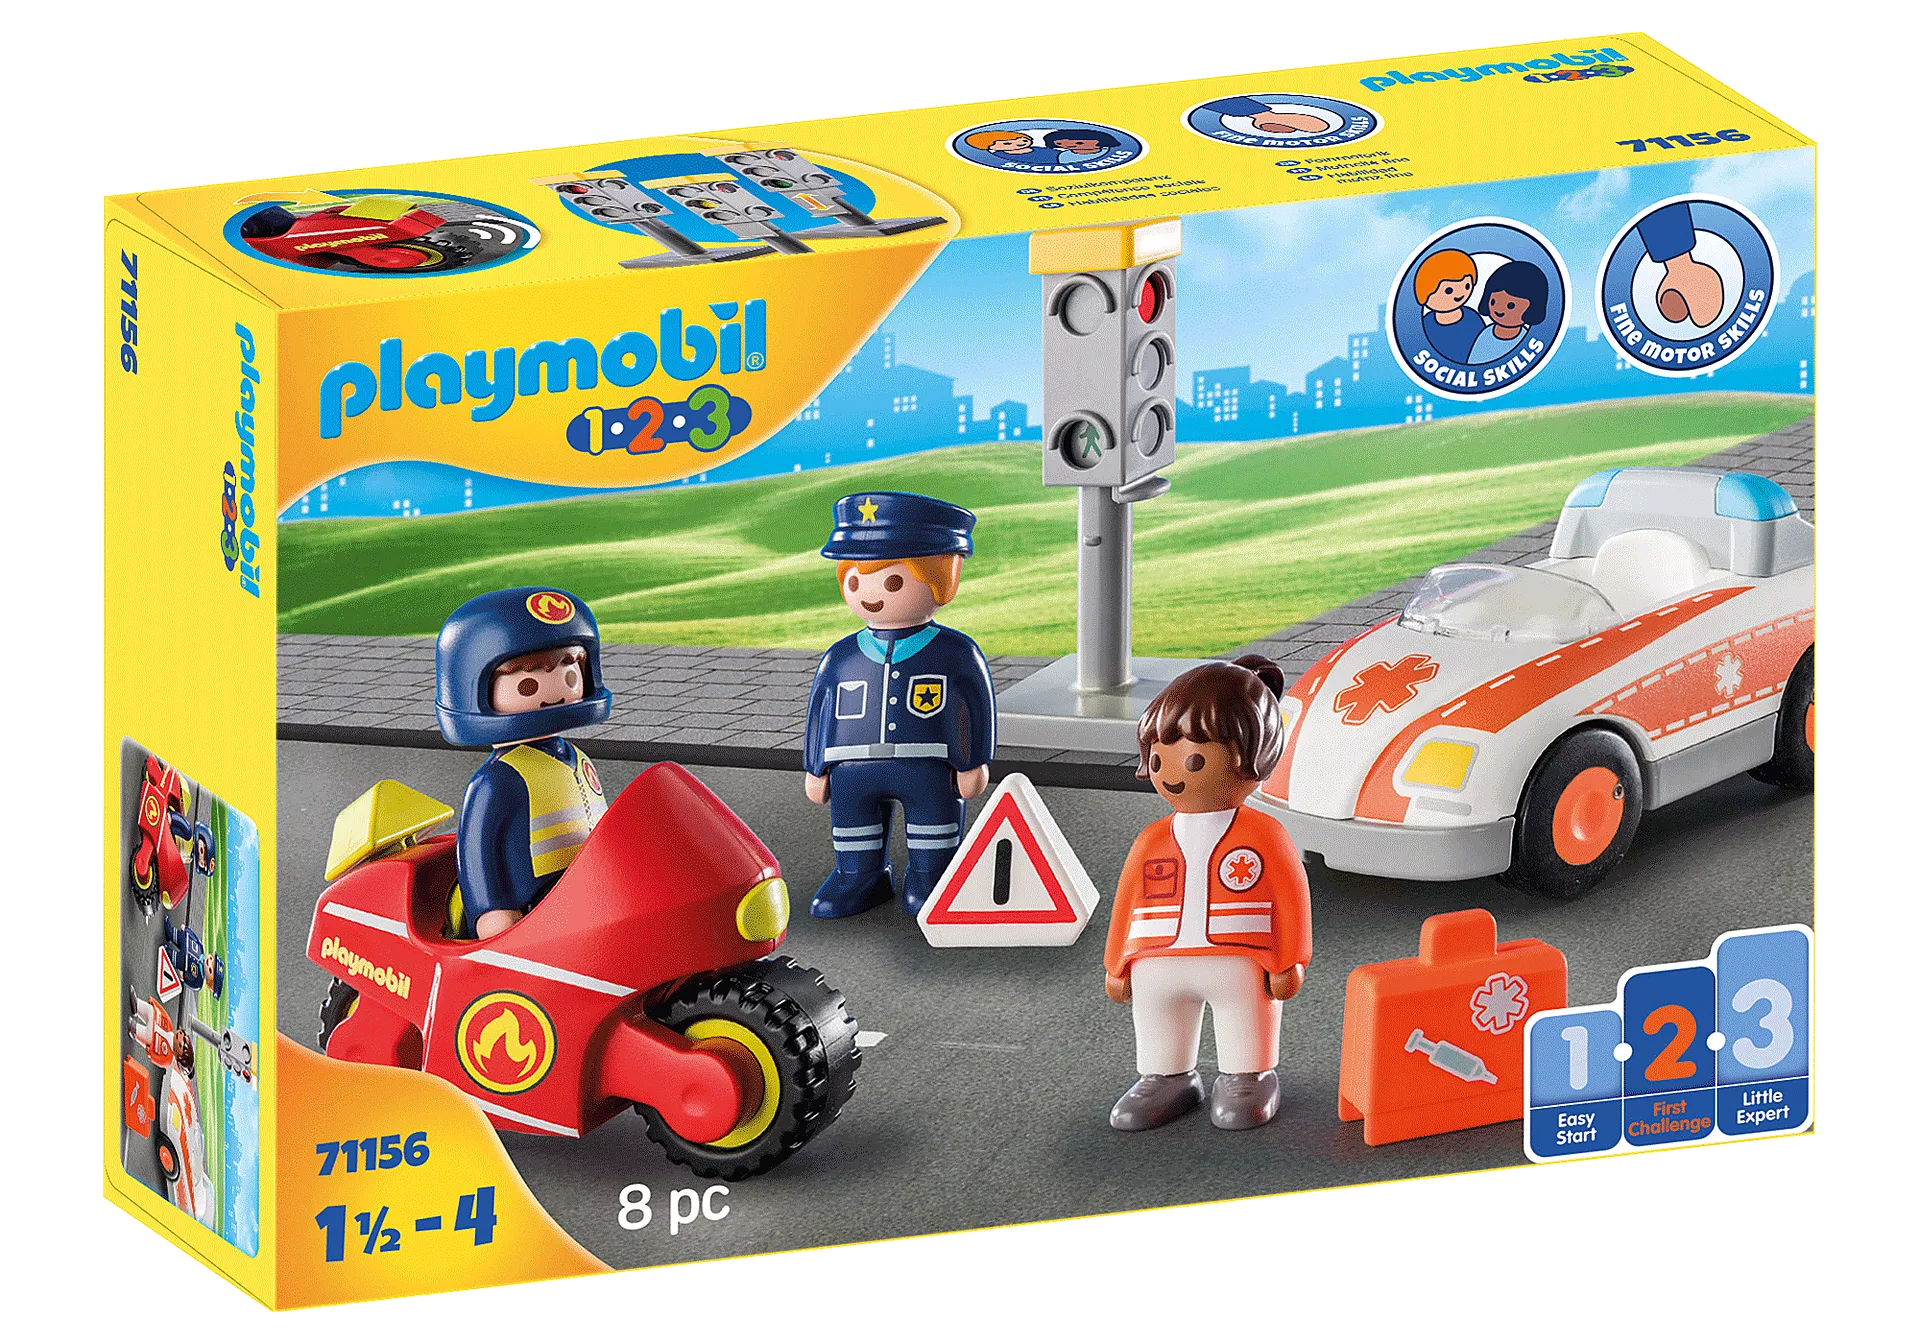 Playmobil 1.2.3 Heros 71156 – Growing Tree Toys